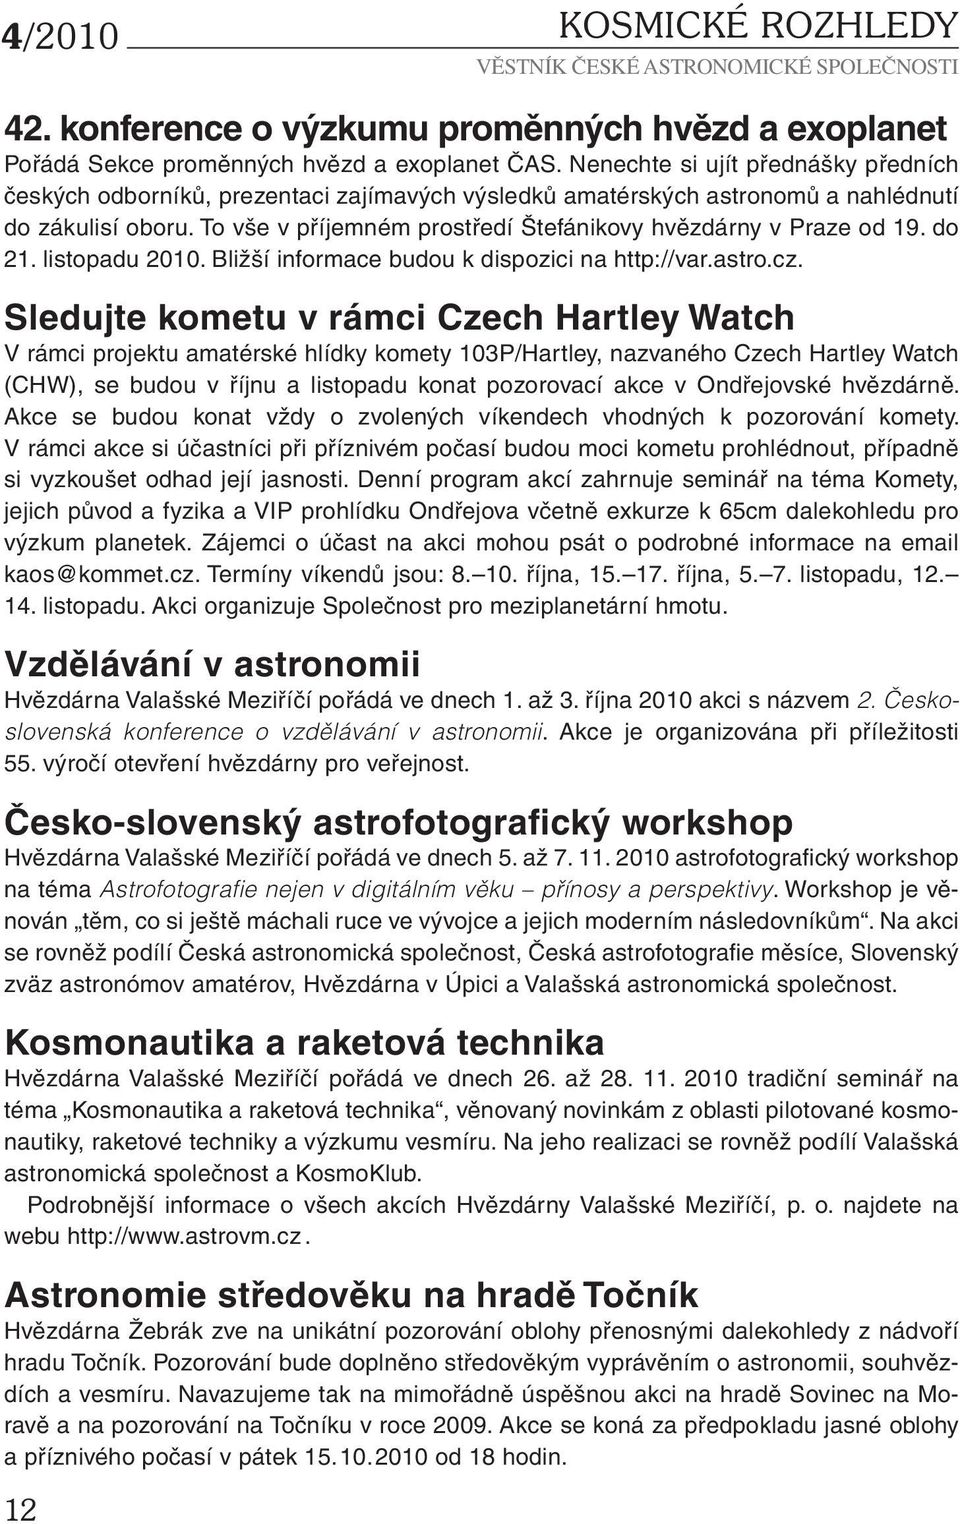 To vše v příjemném prostředí Štefánikovy hvězdárny v Praze od 19. do 21. listopadu 2010. Bližší informace budou k dispozici na http://var.astro.cz.